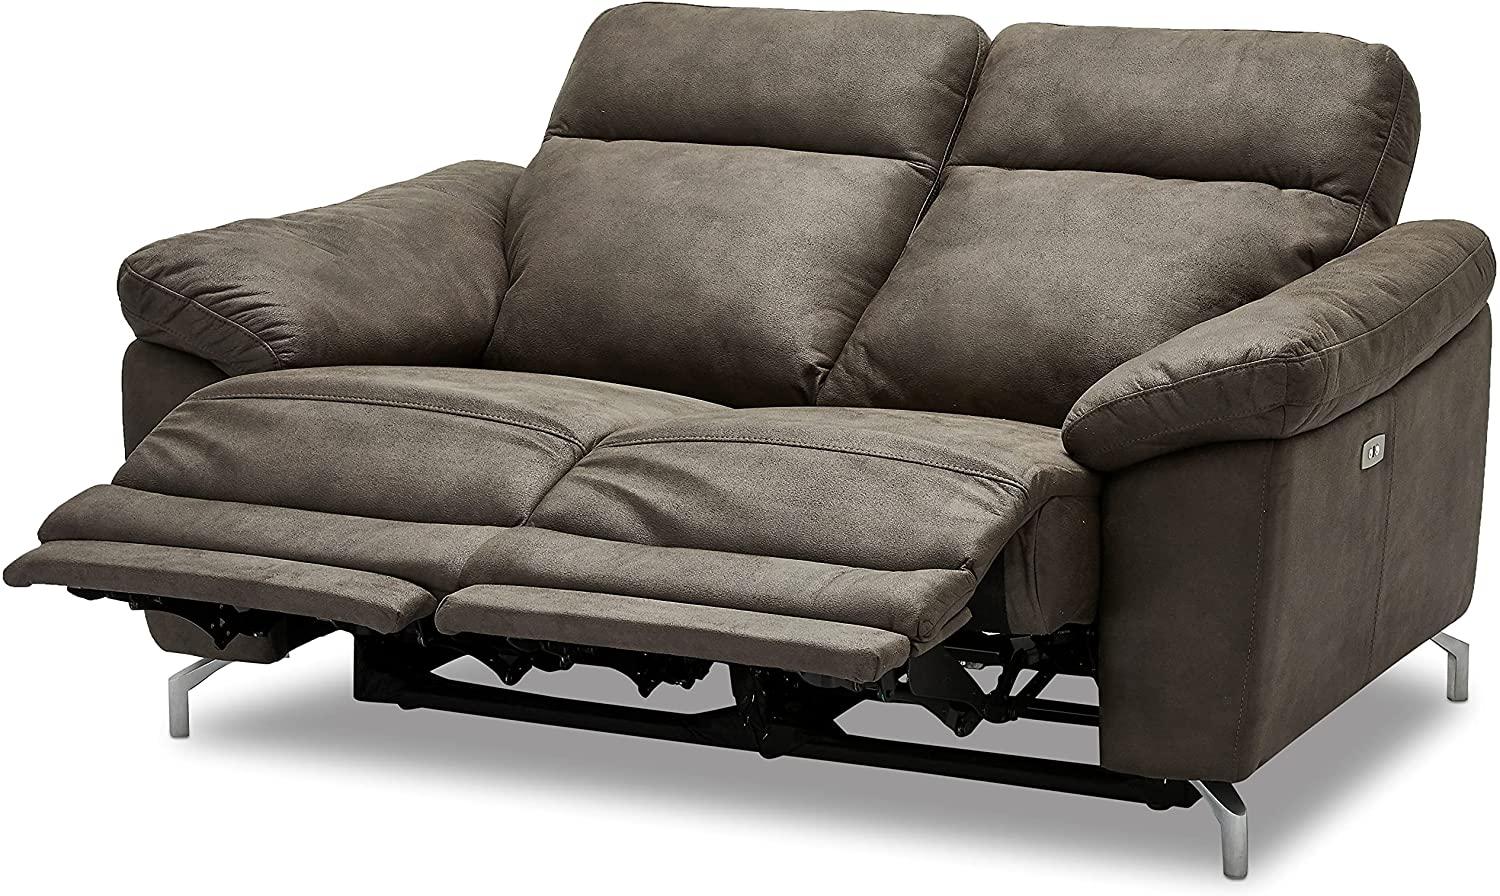 Ibbe Design Braun Stoff 2er Sitzer Relaxsofa Couch mit Elektrisch Verstellbar Relaxfunktion Heimkino Sofa Doha mit Fussteil, Federkern, 162x96x101 cm Bild 1